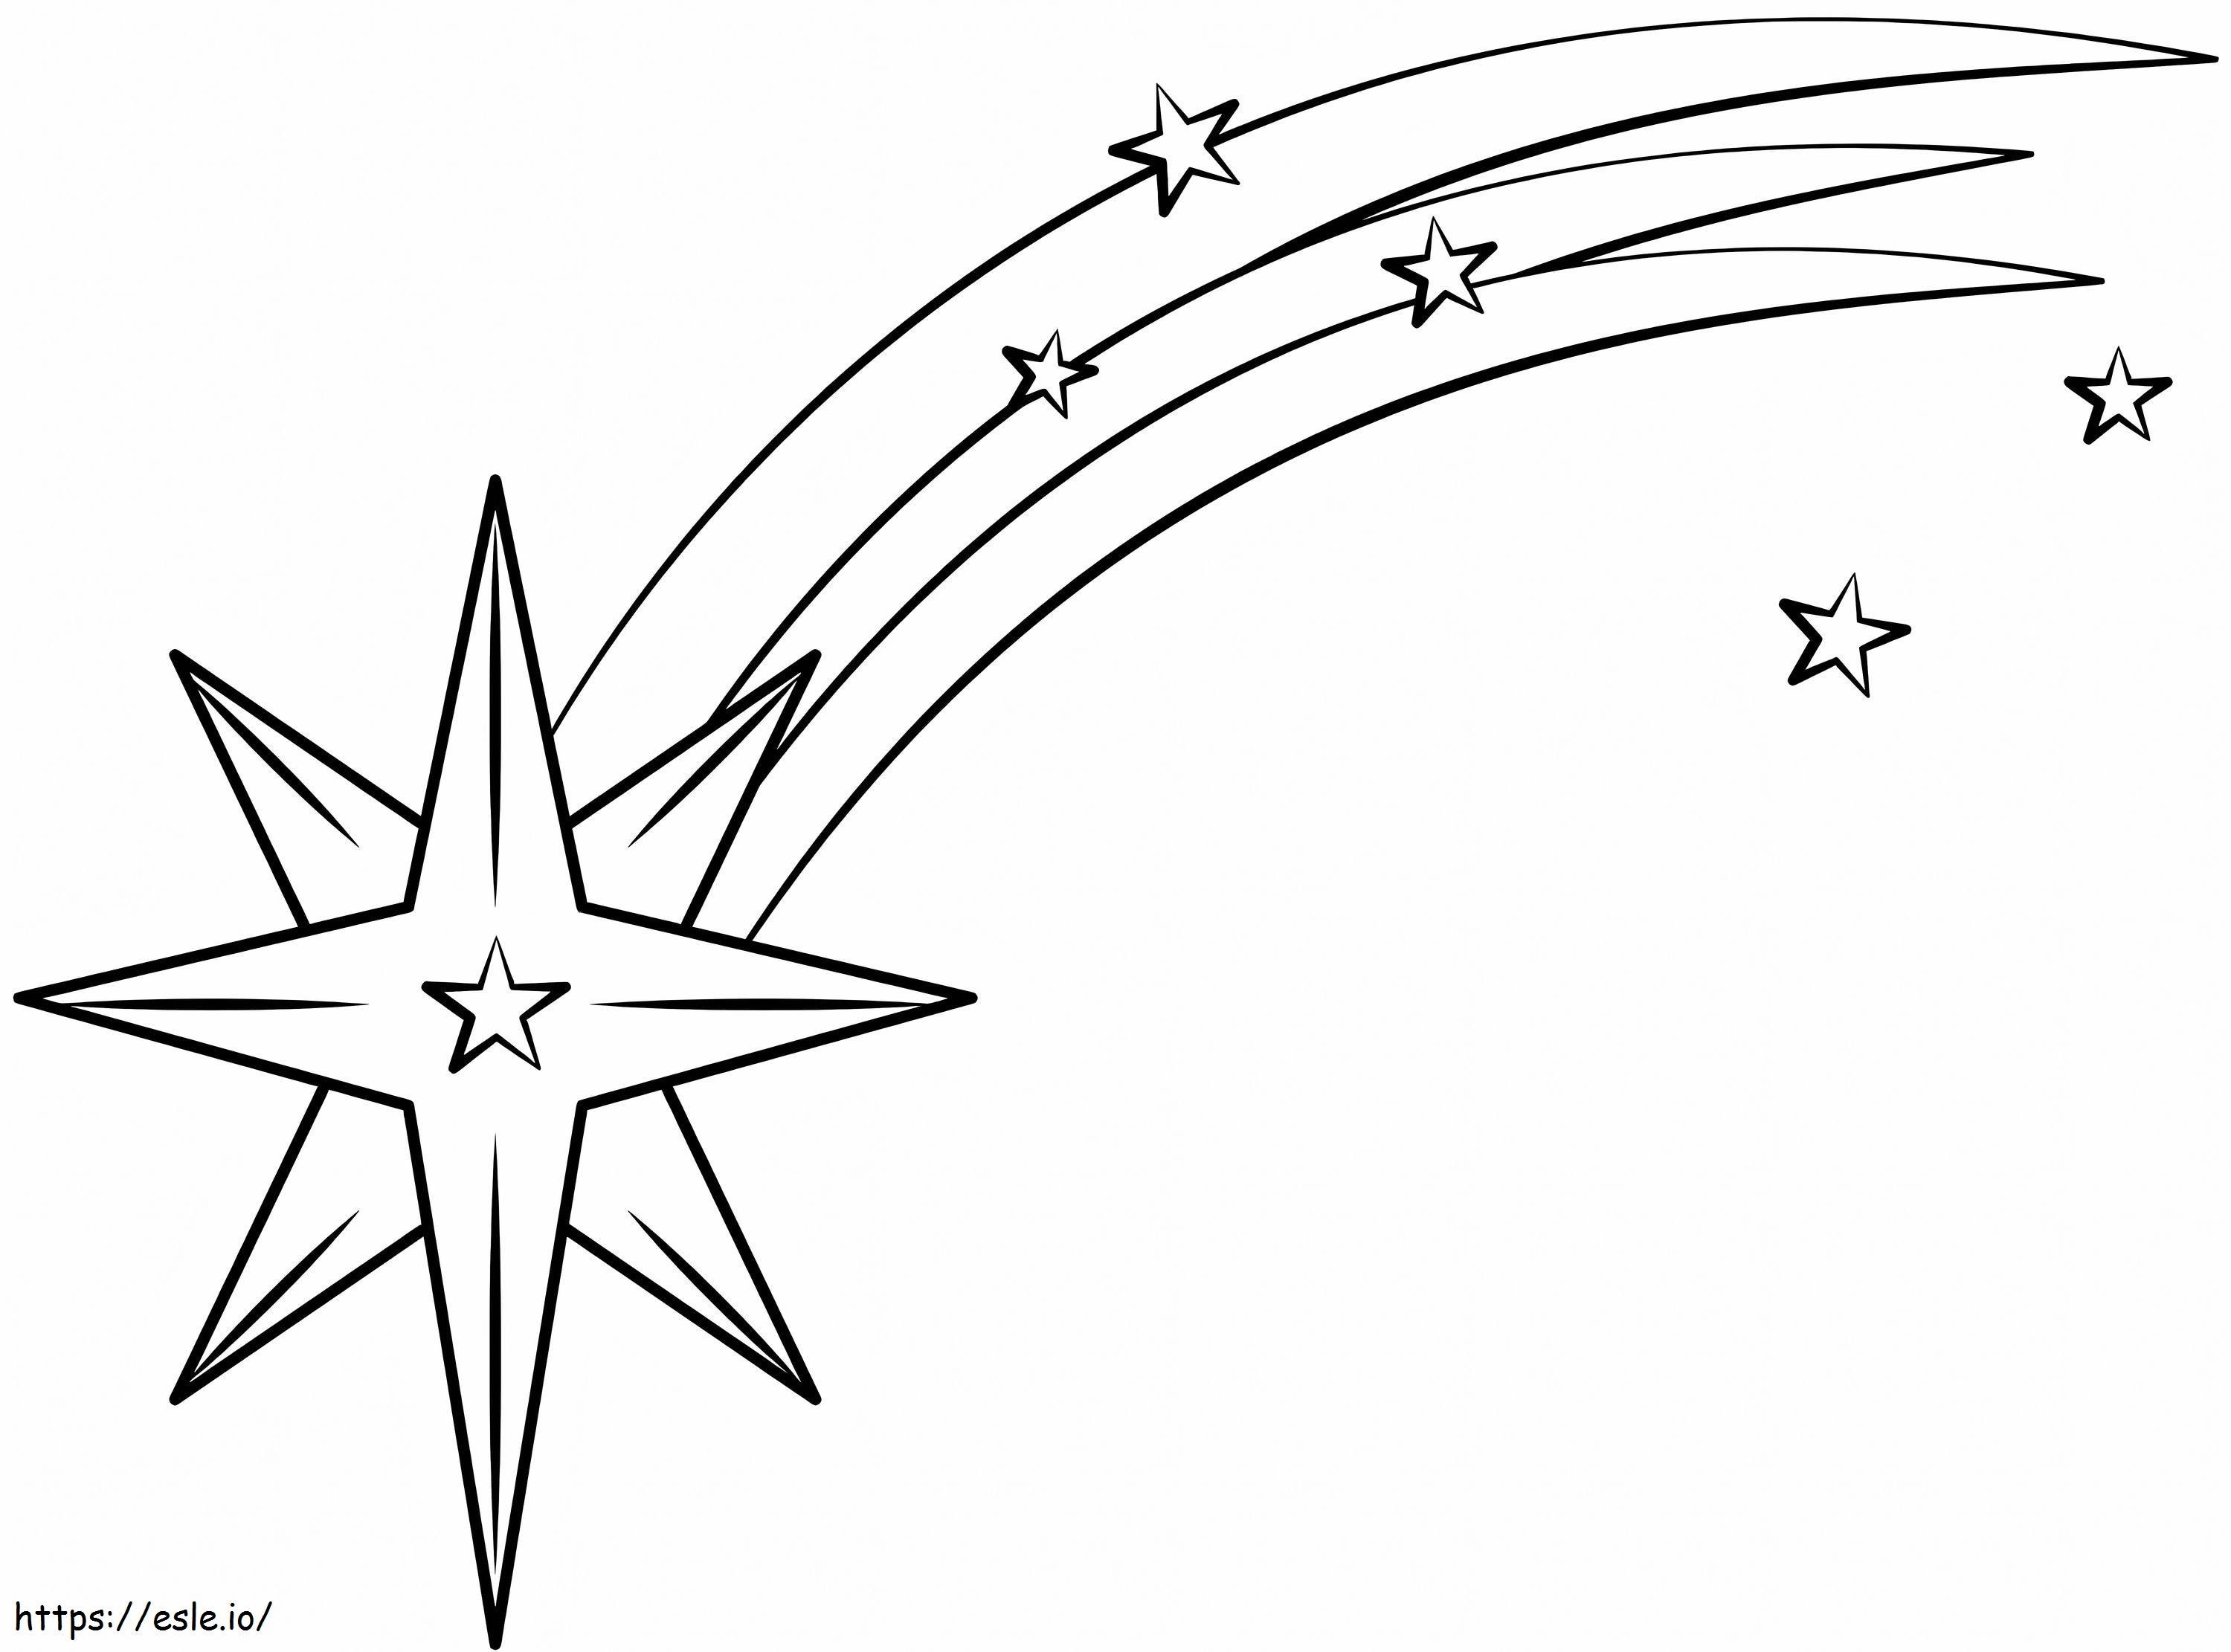 Estrela cadente simples para colorir